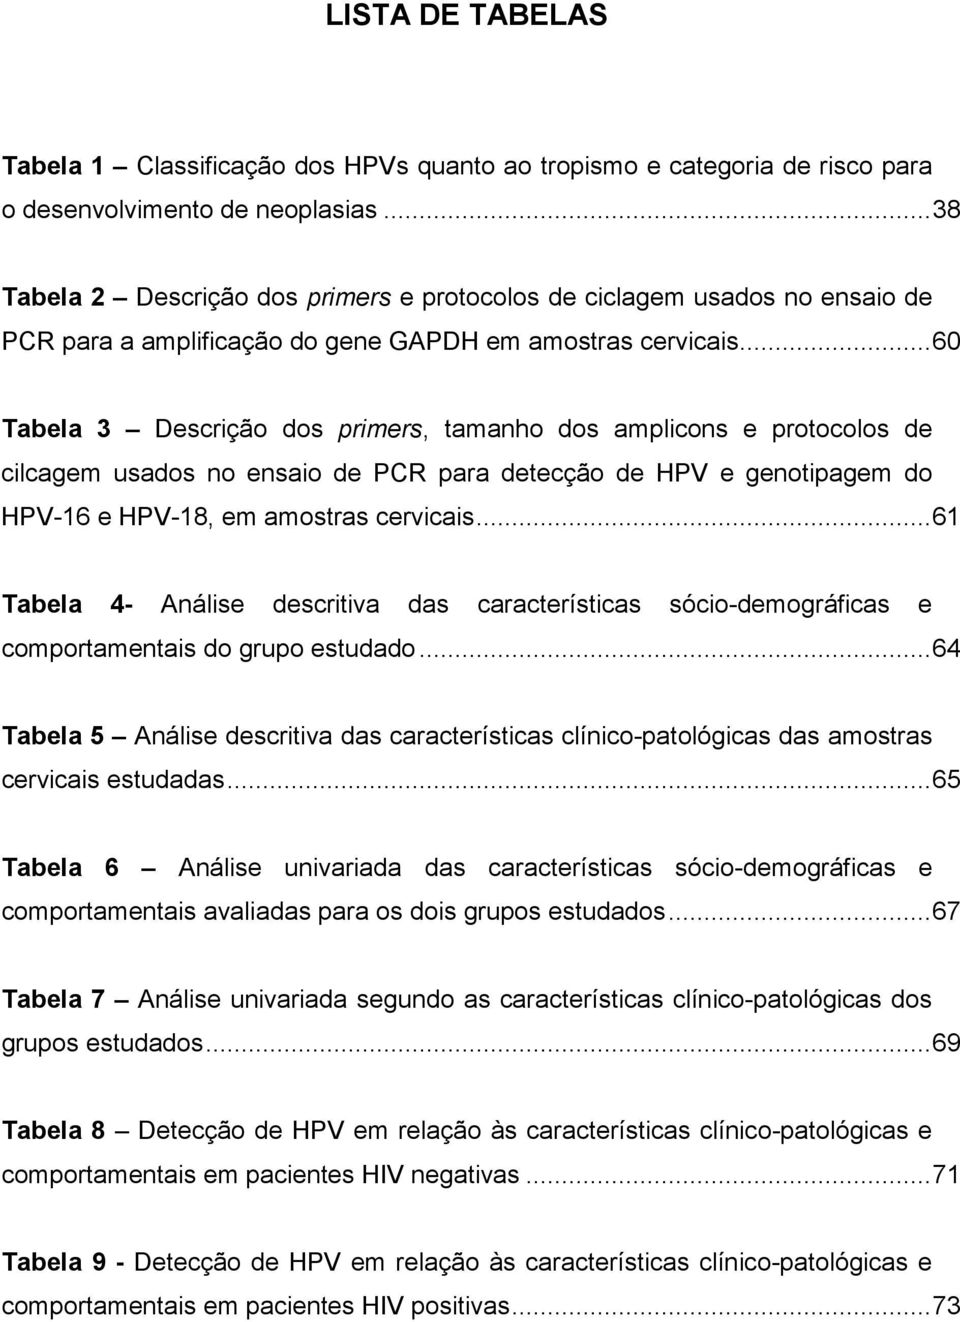 ..60 Tabela 3 Descrição dos primers, tamanho dos amplicons e protocolos de cilcagem usados no ensaio de PCR para detecção de HPV e genotipagem do HPV-16 e HPV-18, em amostras cervicais.